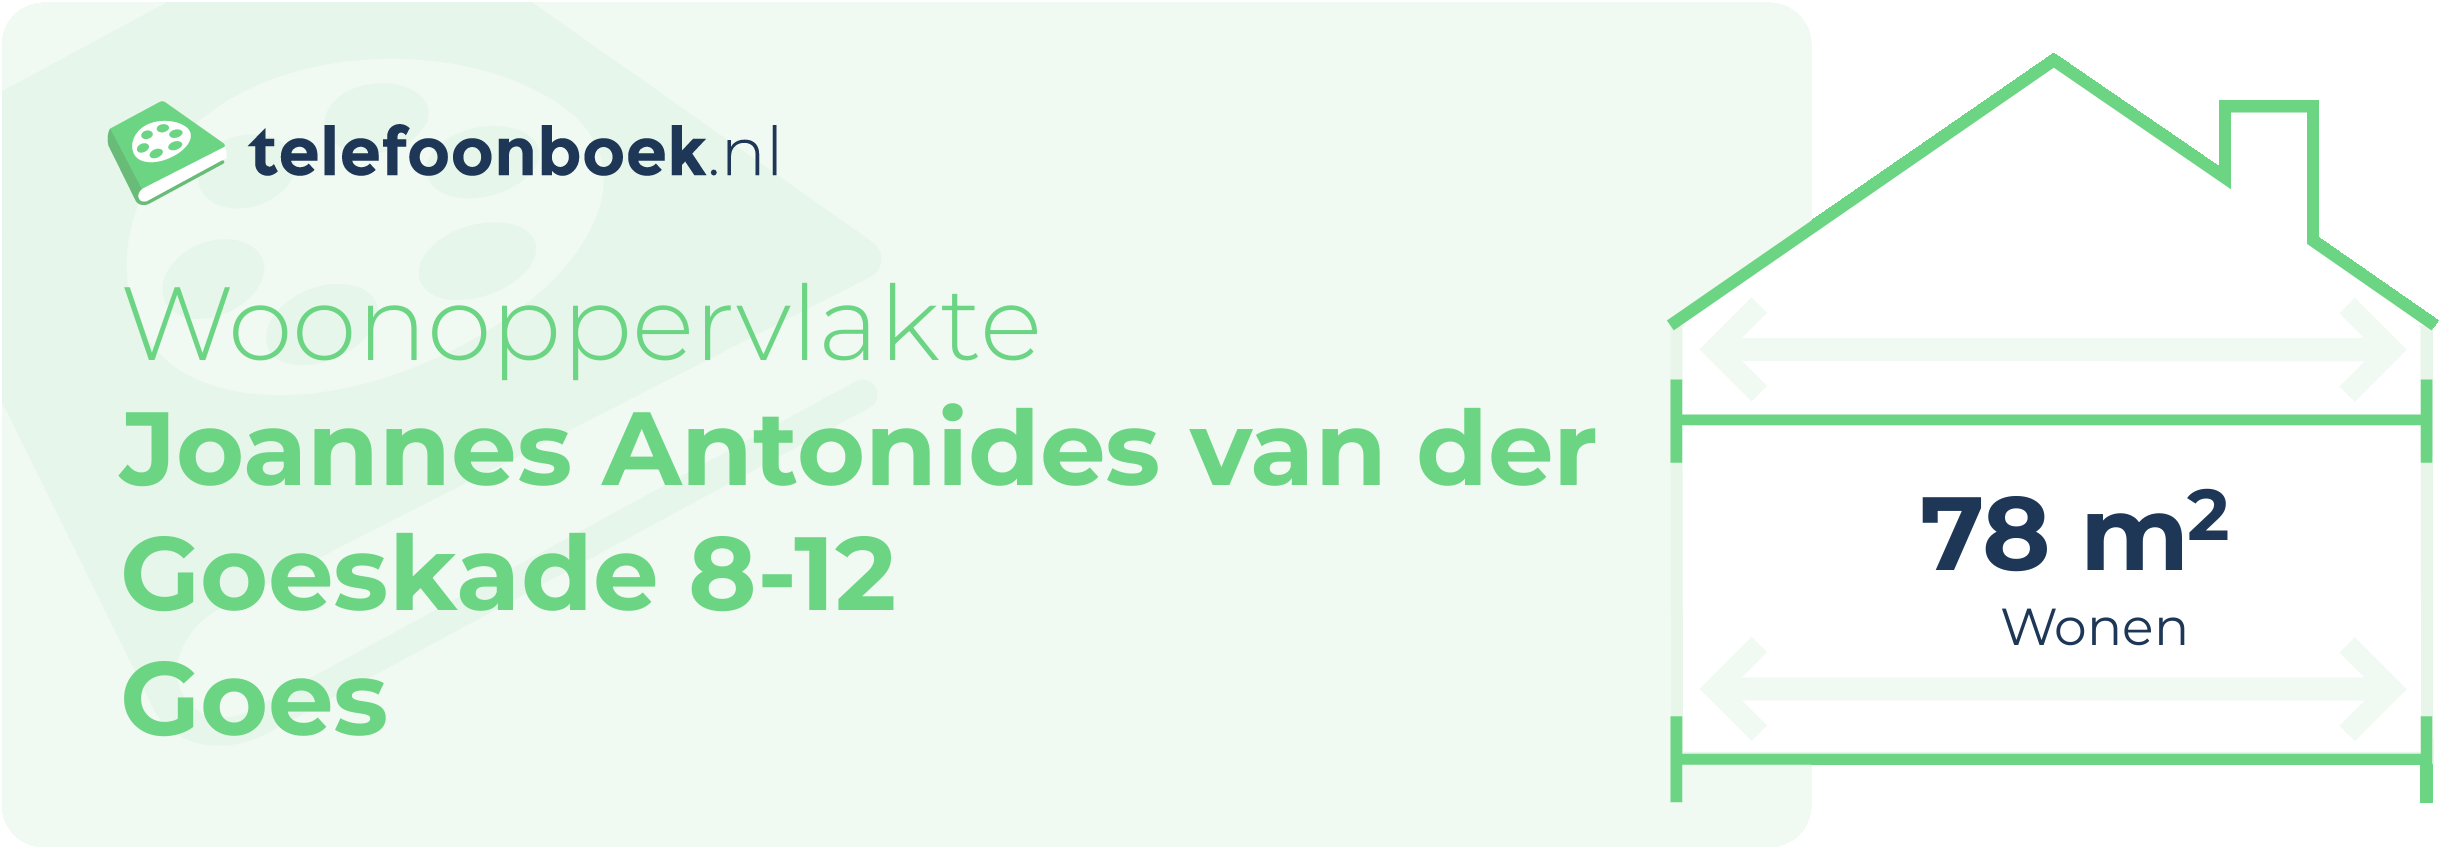 Woonoppervlakte Joannes Antonides Van Der Goeskade 8-12 Goes